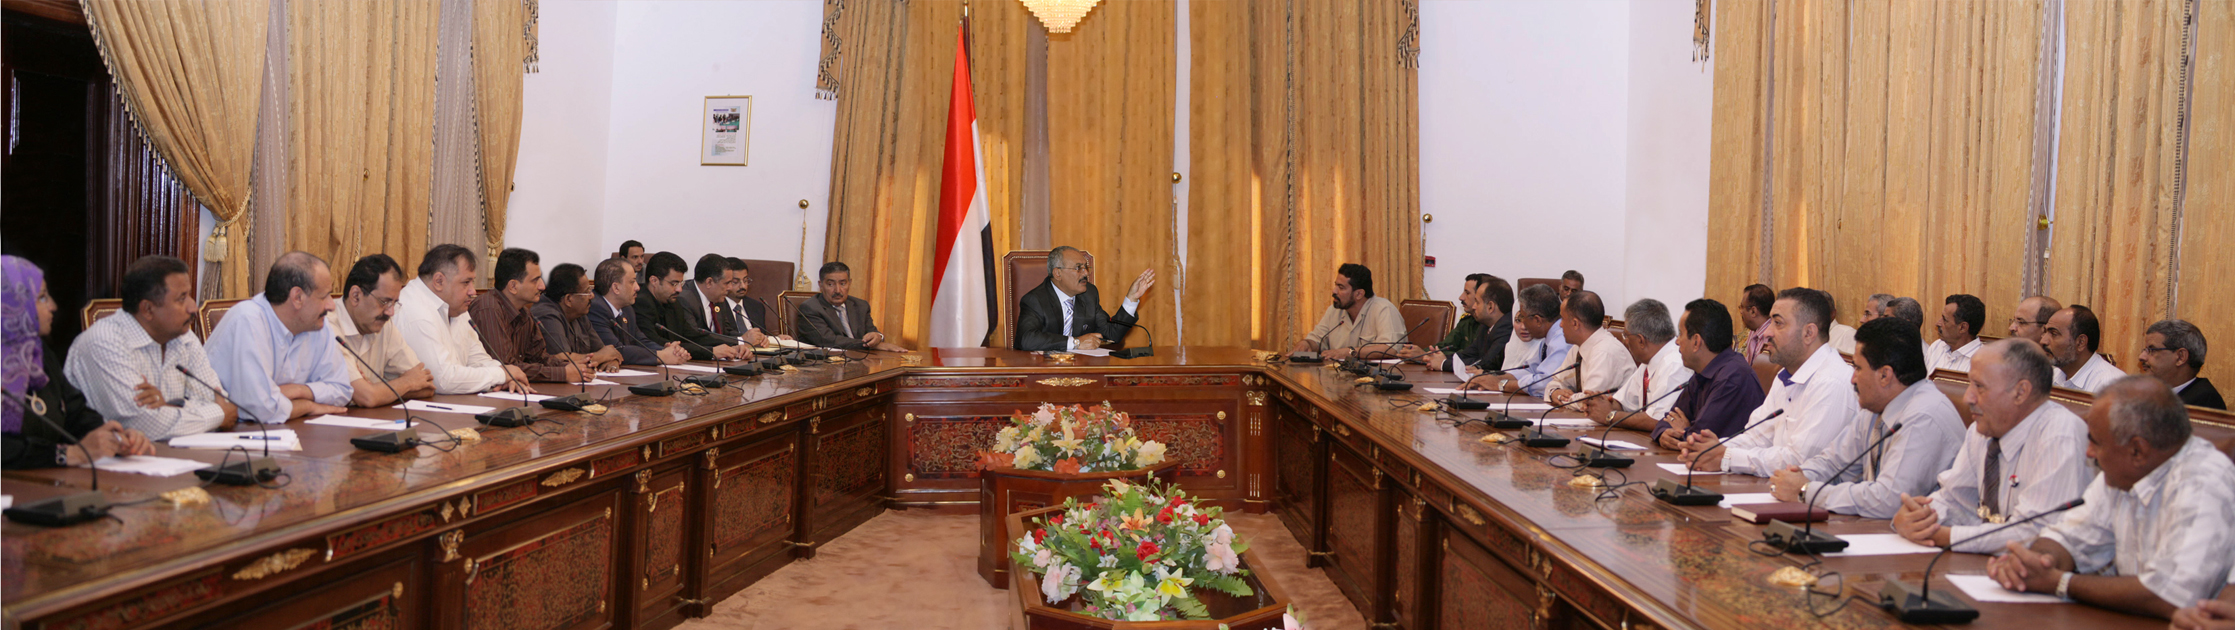 فخامة الرئيس يلتقي رئيس وأعضاء السلطة المحلية والمكاتب التنفيذية بمحافظة عدن